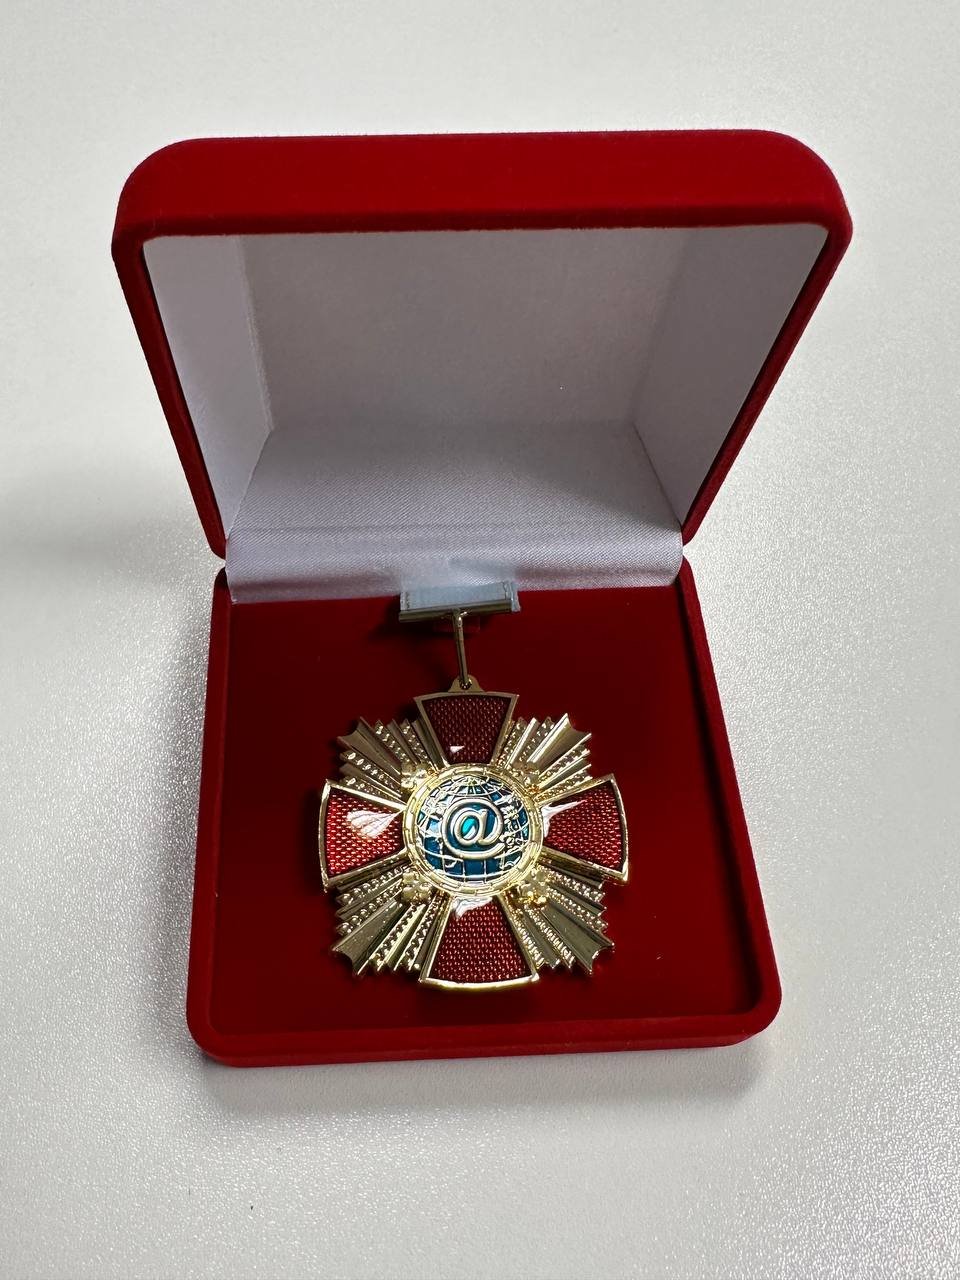 Награда Virtuti Interneti («За заслуги в сфере интернета»), учрежденную Координационным центром доменов .ru/.рф в 2010 году